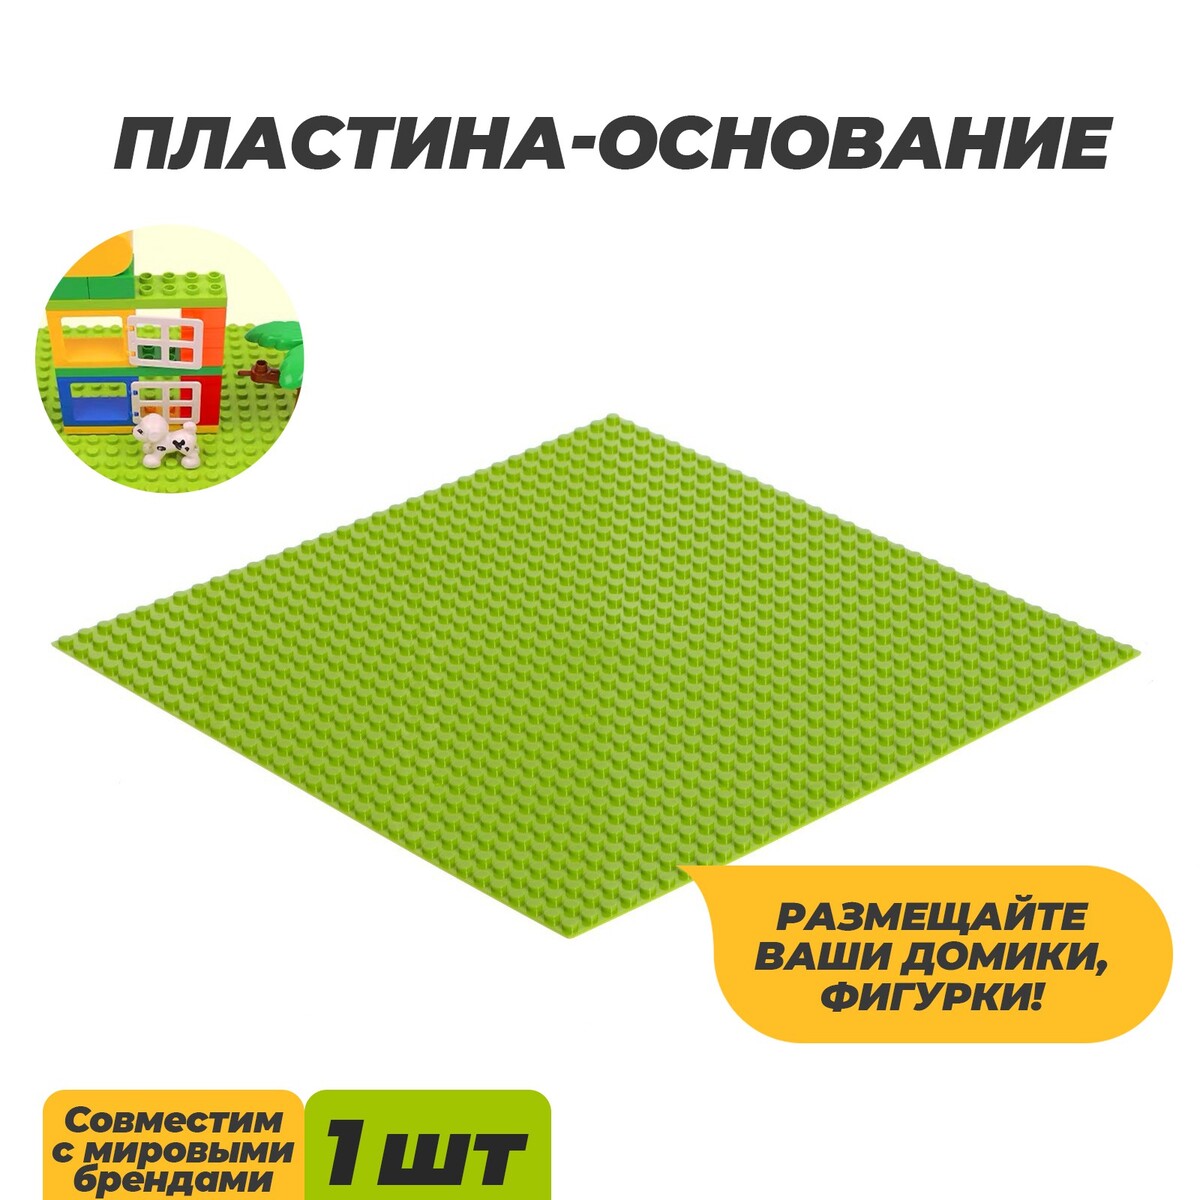 Пластина-основание для конструктора, 25,5 × 25,5 см, цвет салатовый пластина основание для конструктора 40 х 40 см зеленый